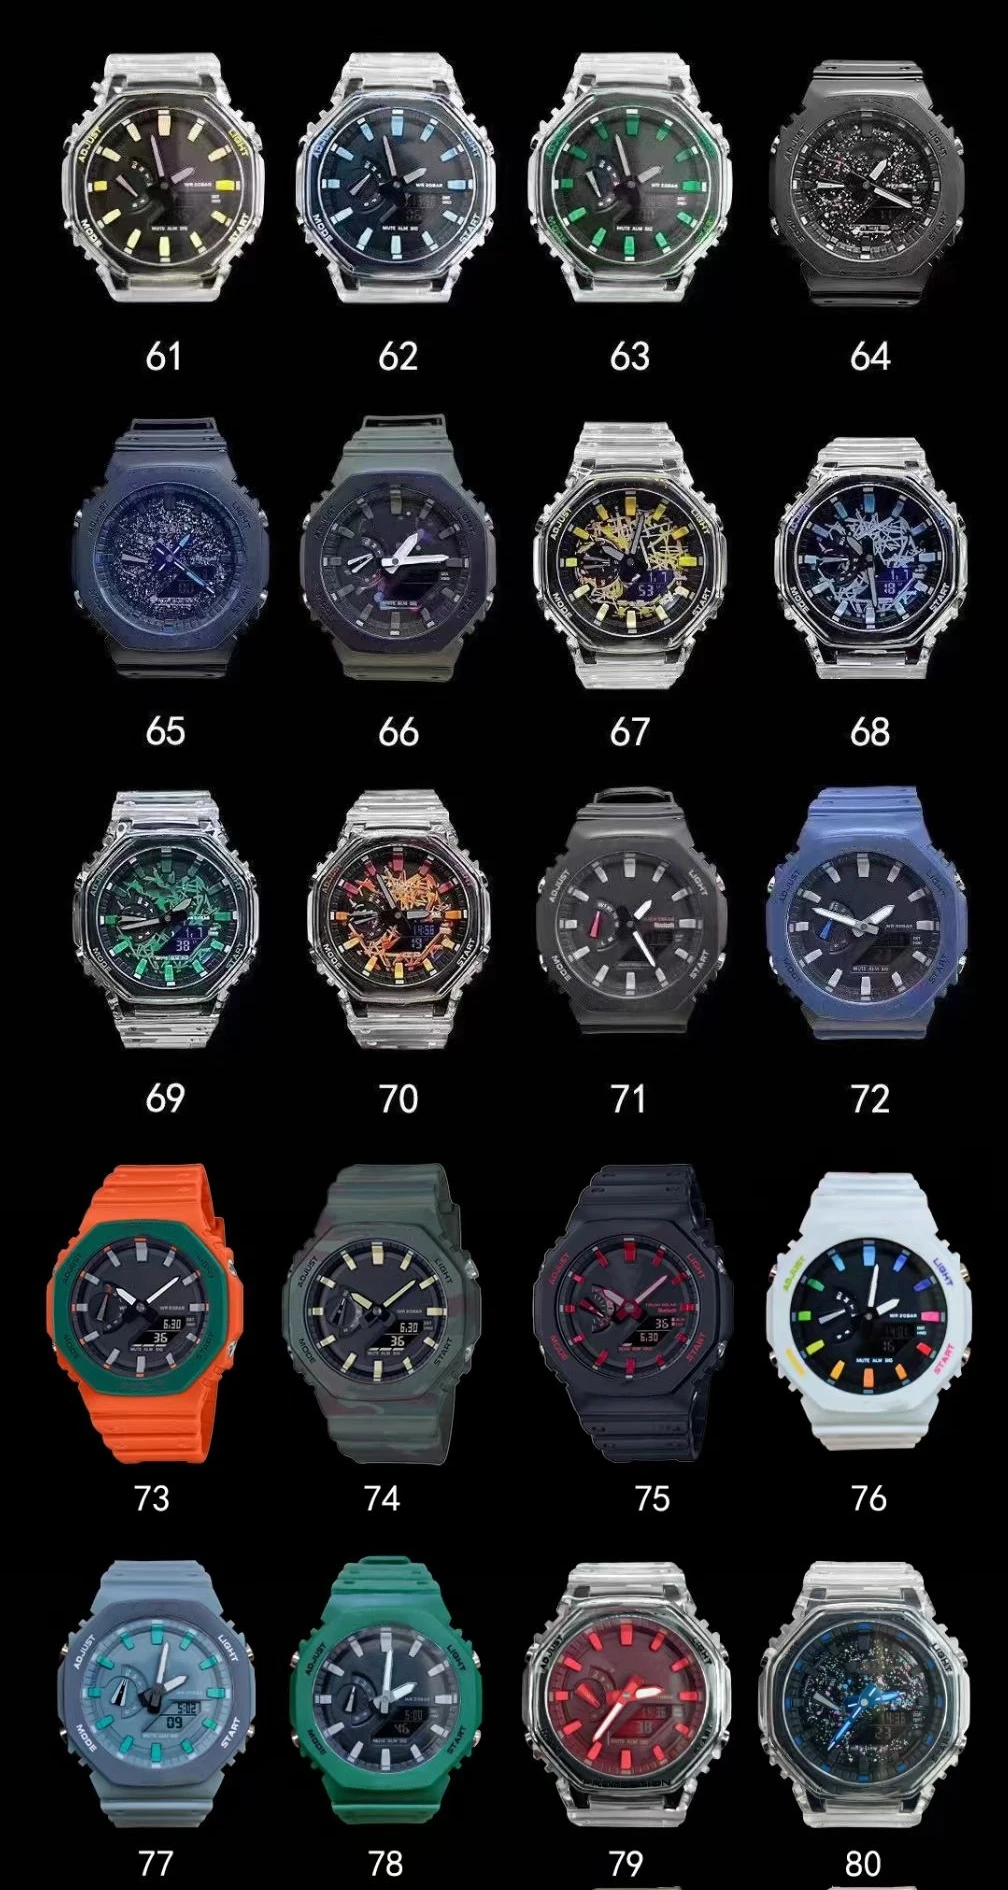 

Мужские спортивные цифровые кварцевые часы 2100, оригинальные часы Shock World Time, Полная функциональность, светодиодный съемный монтажный циферблат, серия Oak